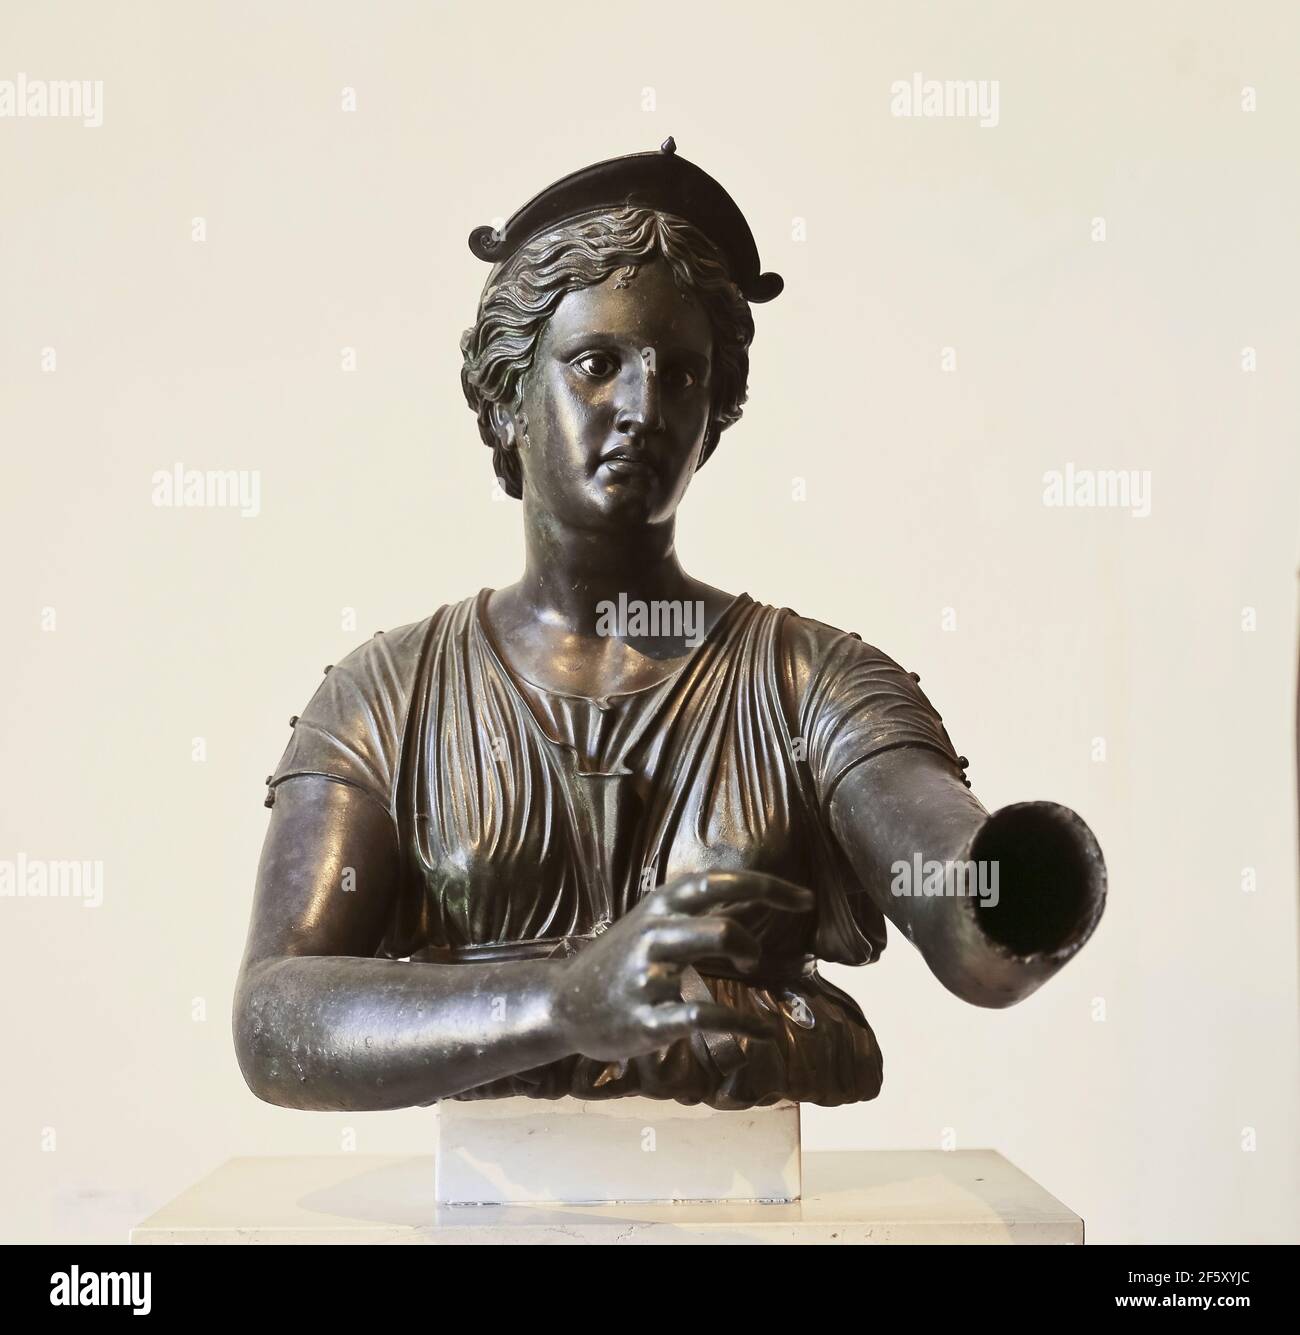 Buste de Diana (Artemis). 2e cent. C.-B. période hellénistique. Temple d'Apollon, Pompéi. Statue de bronze. Musée archéologique de Naples, Italie. Banque D'Images